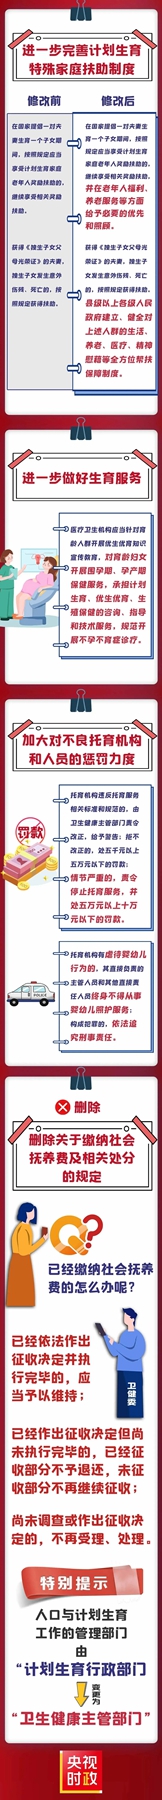 【微普法】一图详解《中华人民共和国人口与计划生育法》